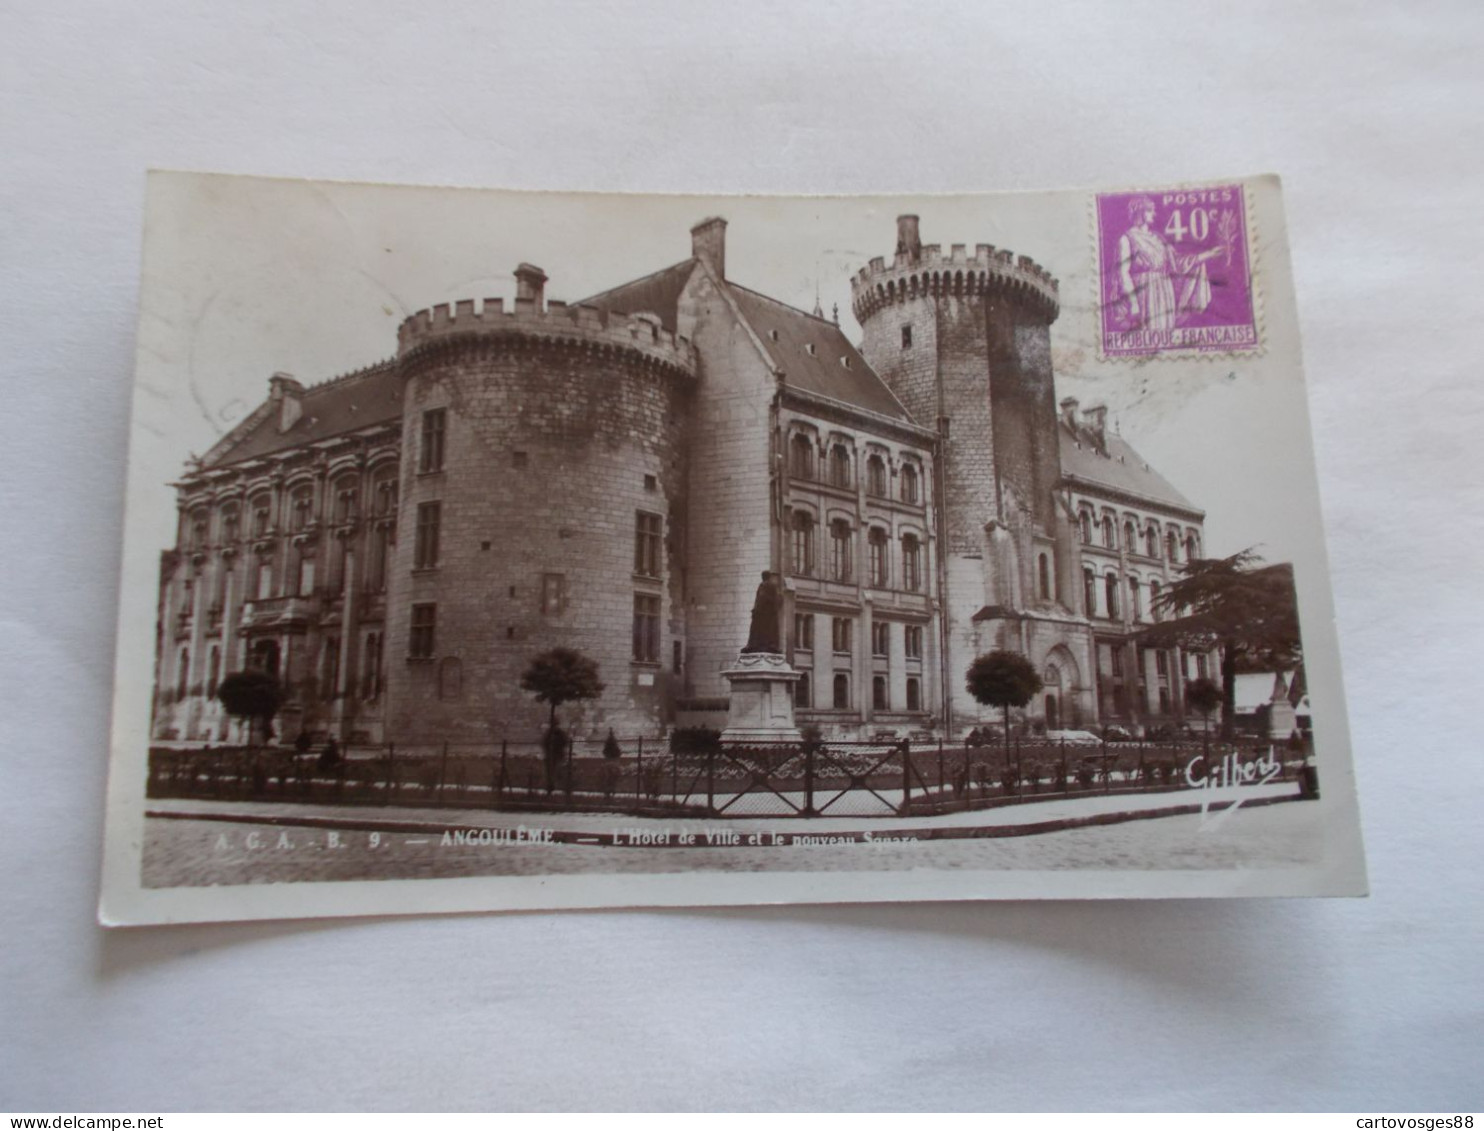 ANGOULEME ( 16 Charente )  L HOTEL DE VILLE ET LE NOUVEAU SQUARE 1936 - Angouleme